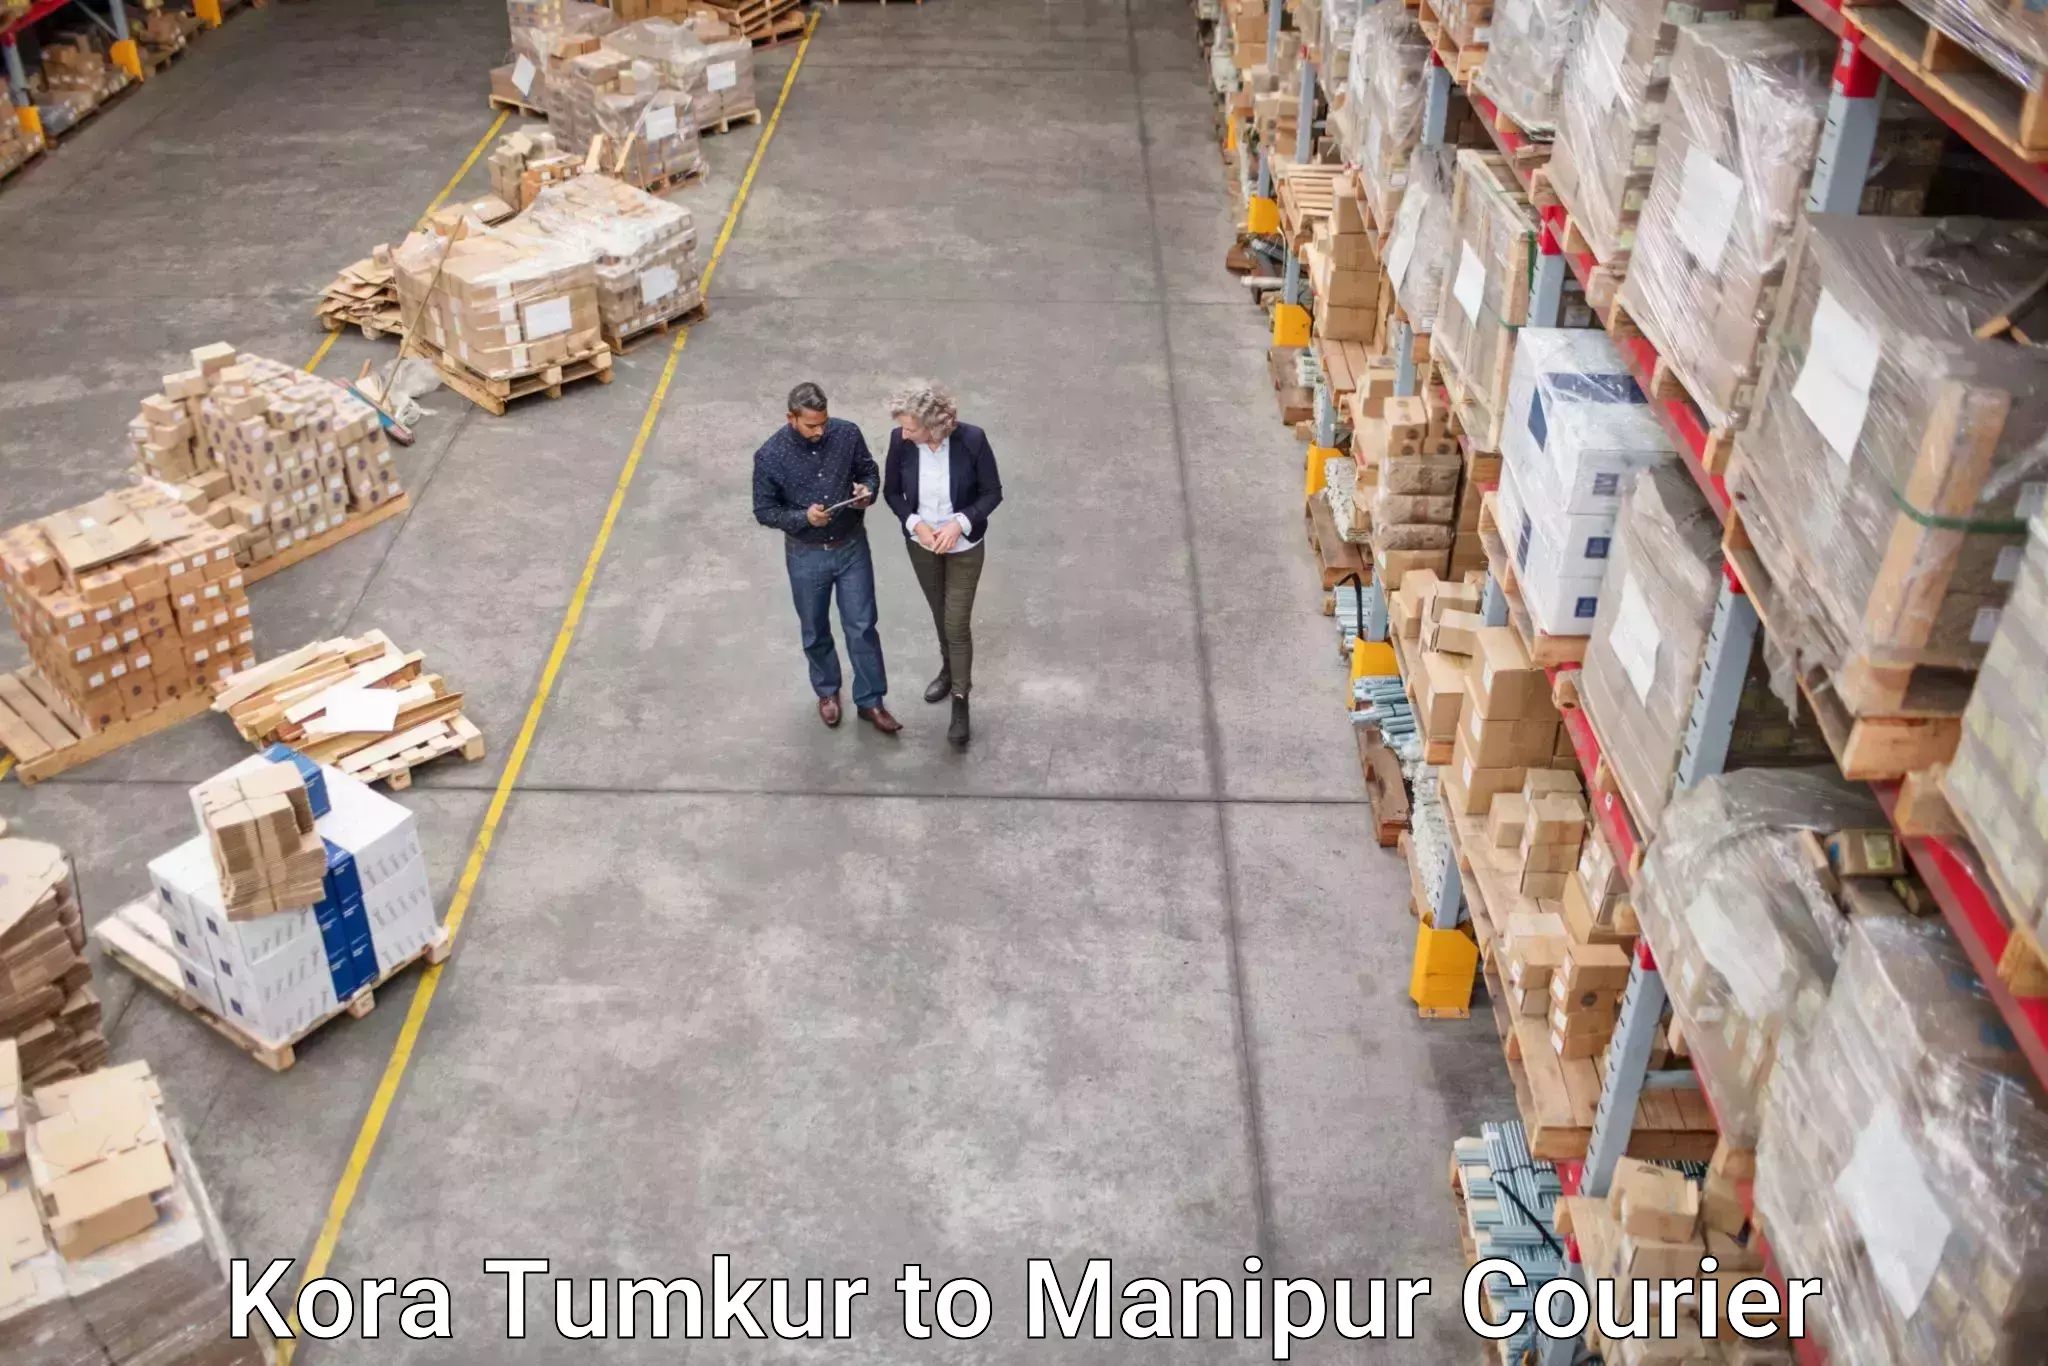 Professional courier handling Kora Tumkur to Manipur